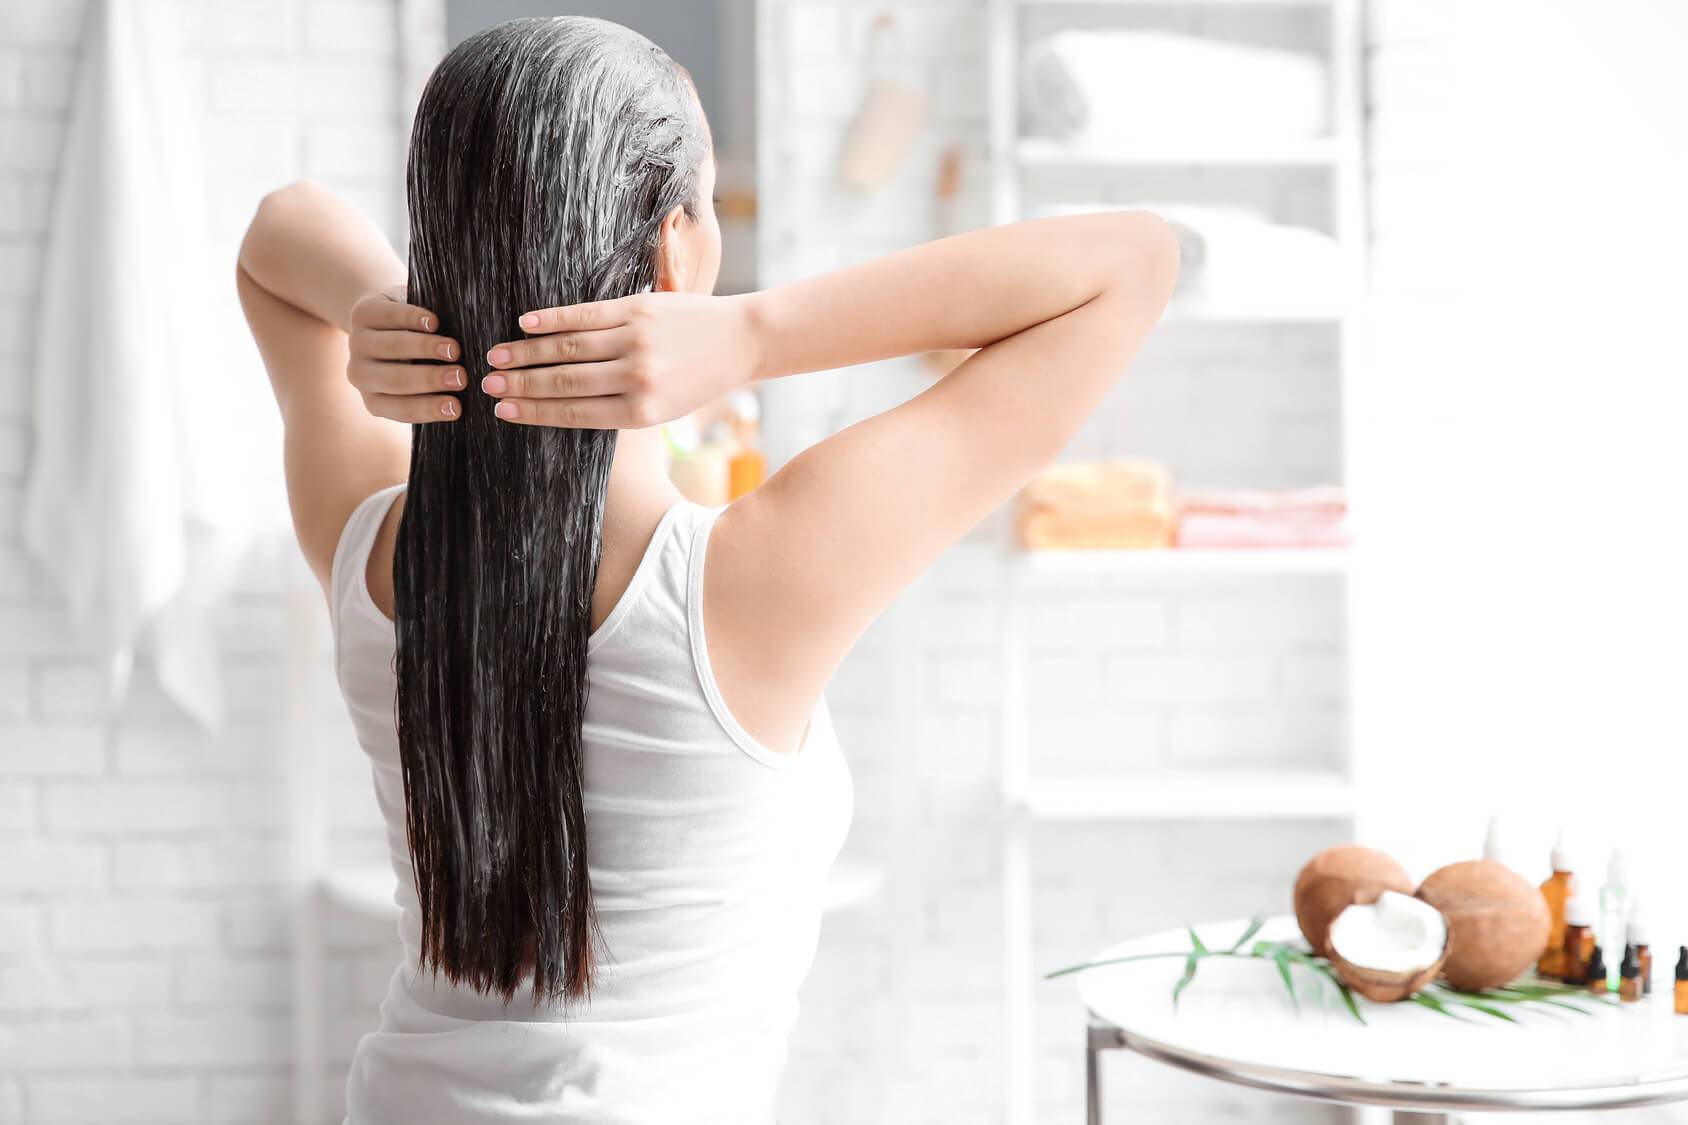 Ламинирование волос в домашних условиях профессиональными средствами эстель: как делается, что нужно, лучшие препараты